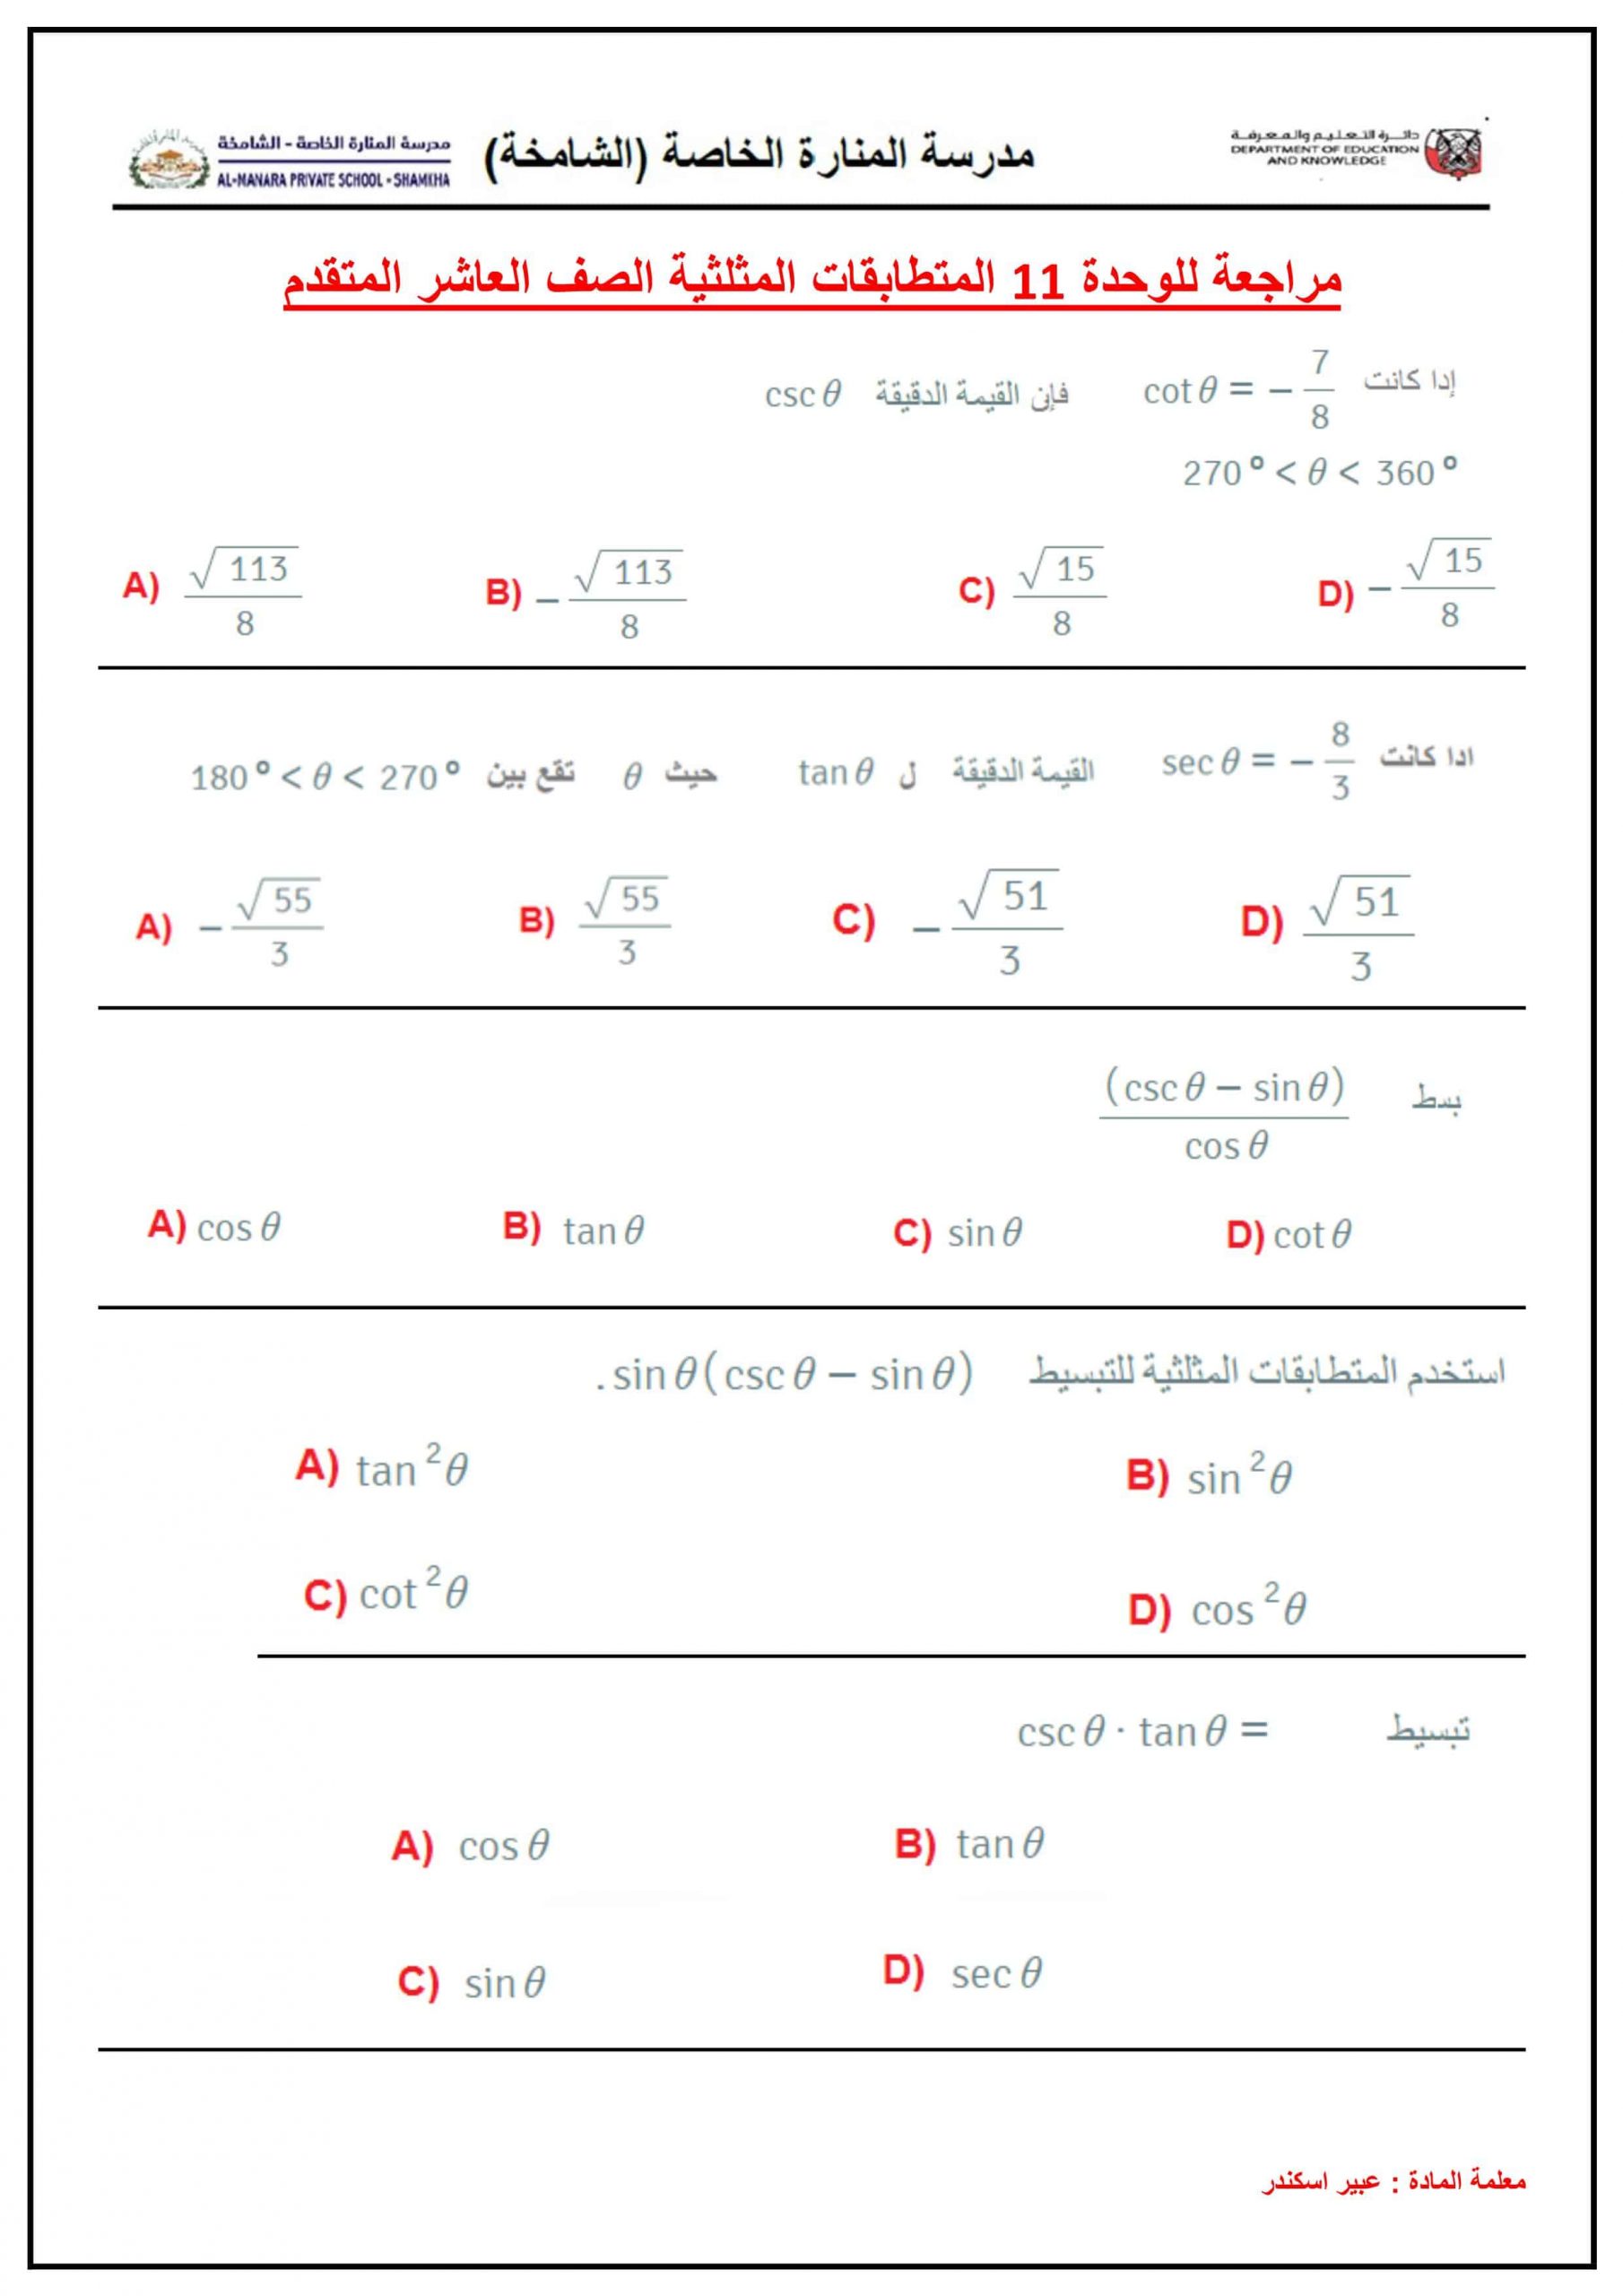 حل أوراق عمل مراجعة للوحدة 11 المتطابقات المثلثية الصف العاشر متقدم مادة الرياضيات المتكاملة